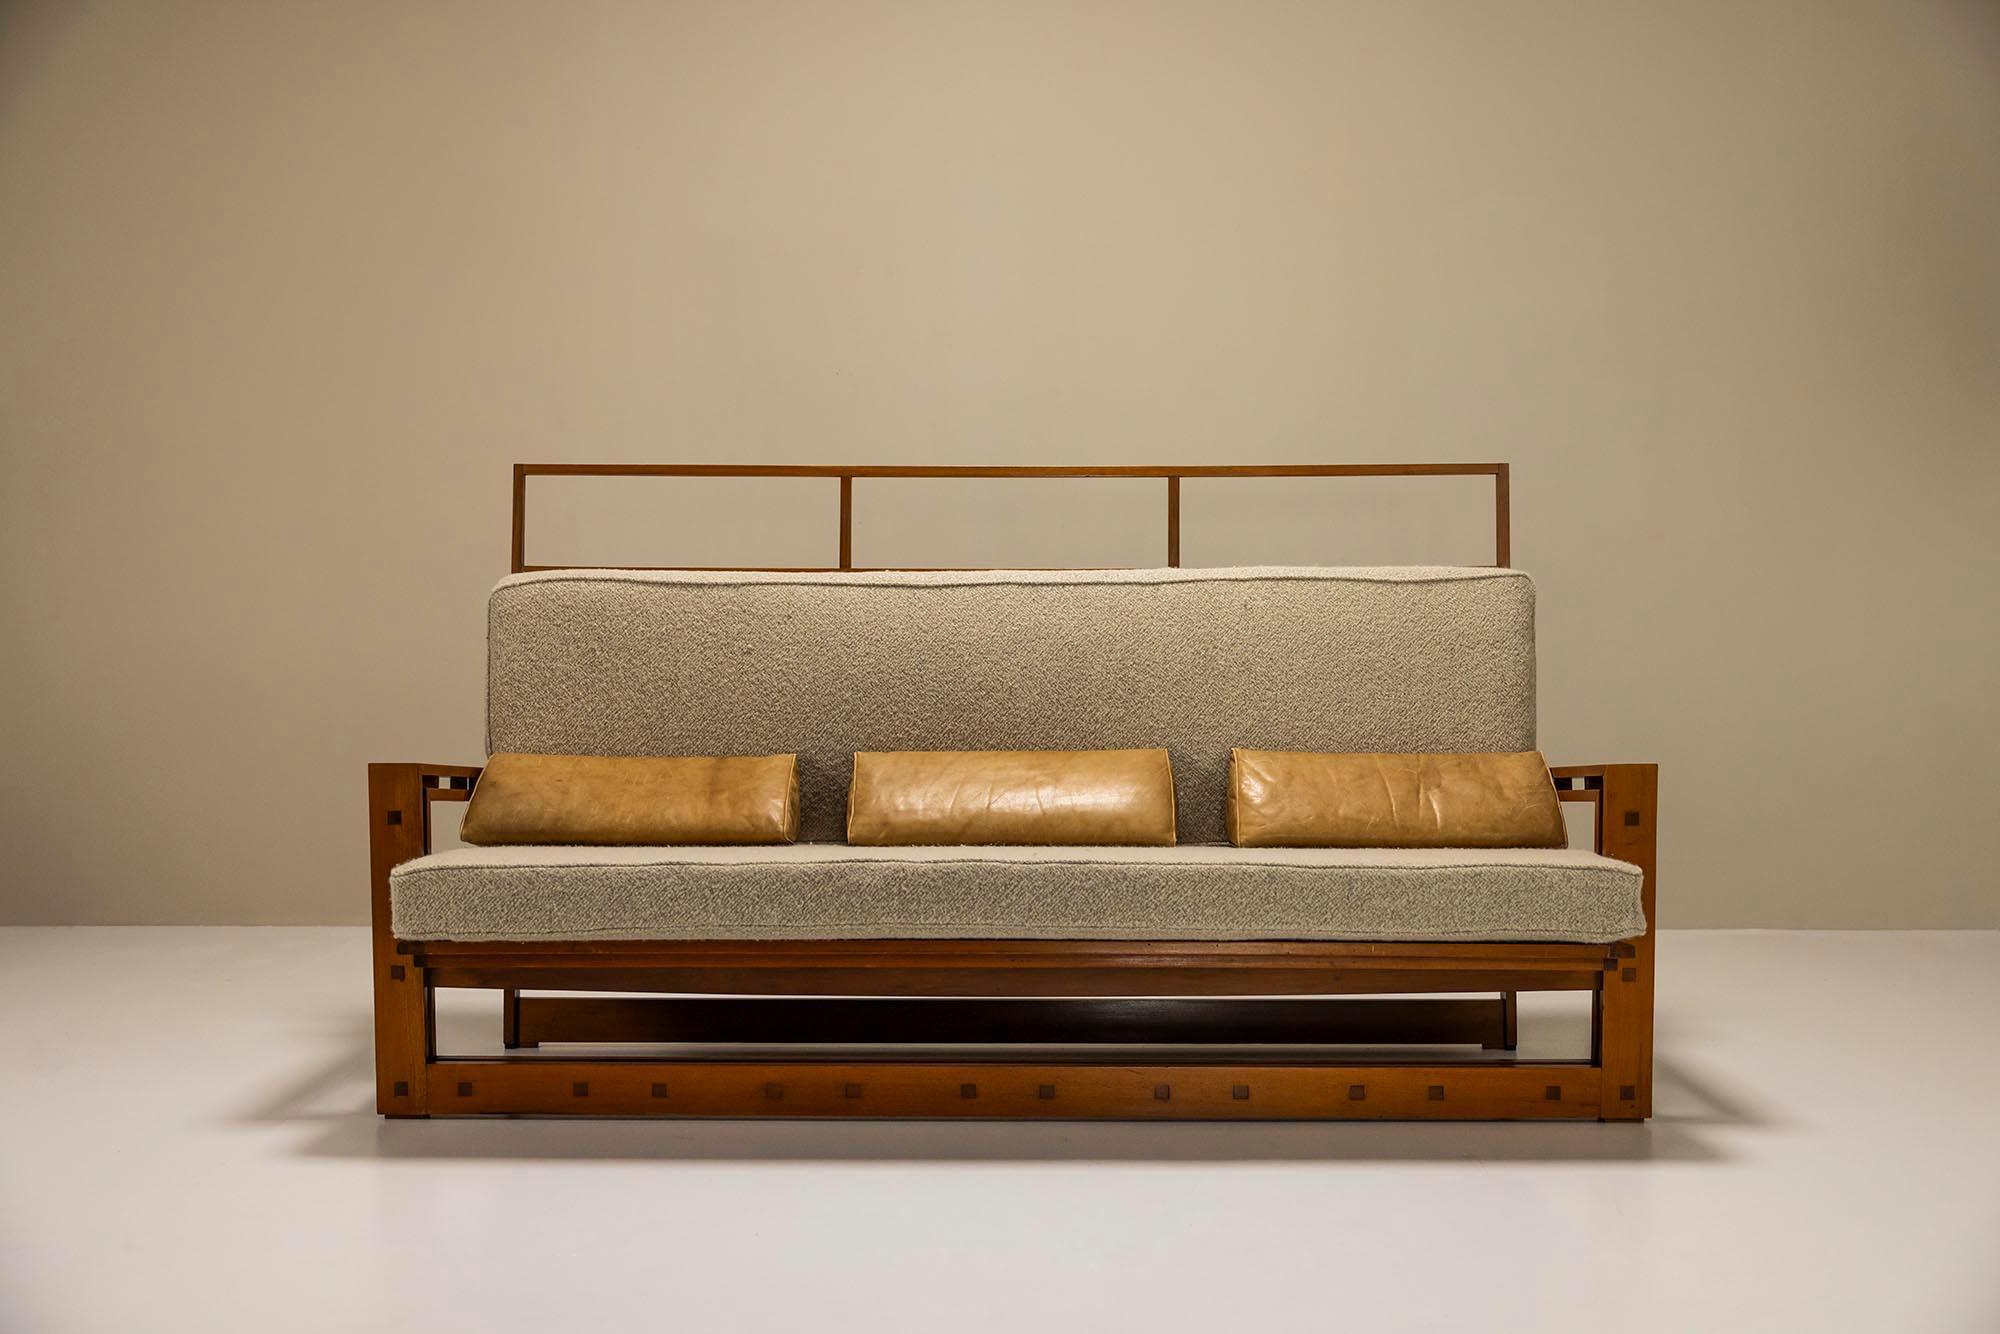 Dieses einzigartige Sofa wurde von dem italienischen Architekten Fausto Bontempi entworfen, der hauptsächlich in und um Brescia tätig war. Er schloss sein Studium an der Università Iuav di Venezia ab und arbeitete später auch als Professor für